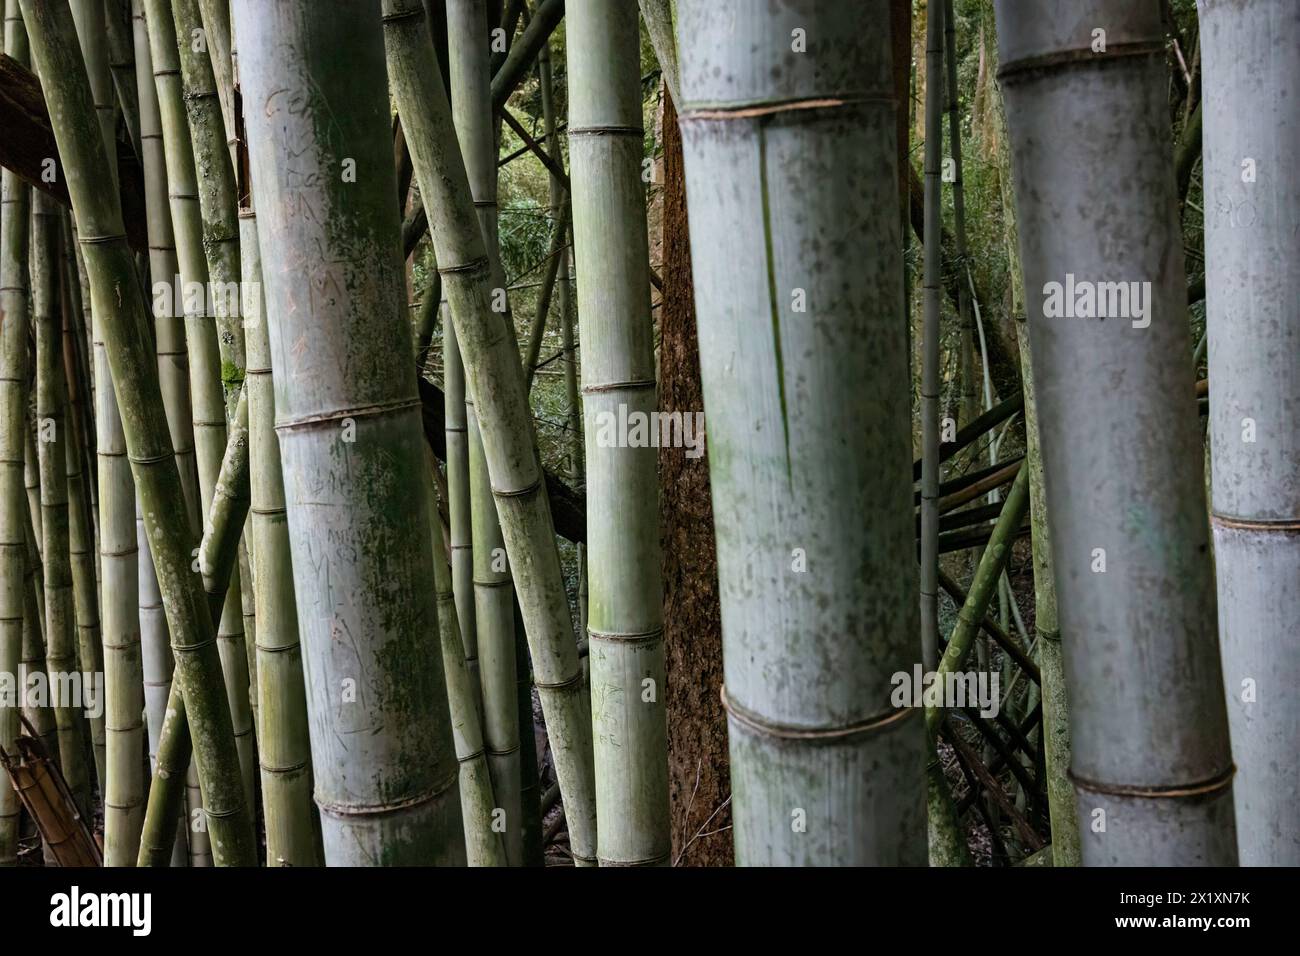 Fond naturel des tiges de bambou gris géant poussant dans une forêt. Banque D'Images